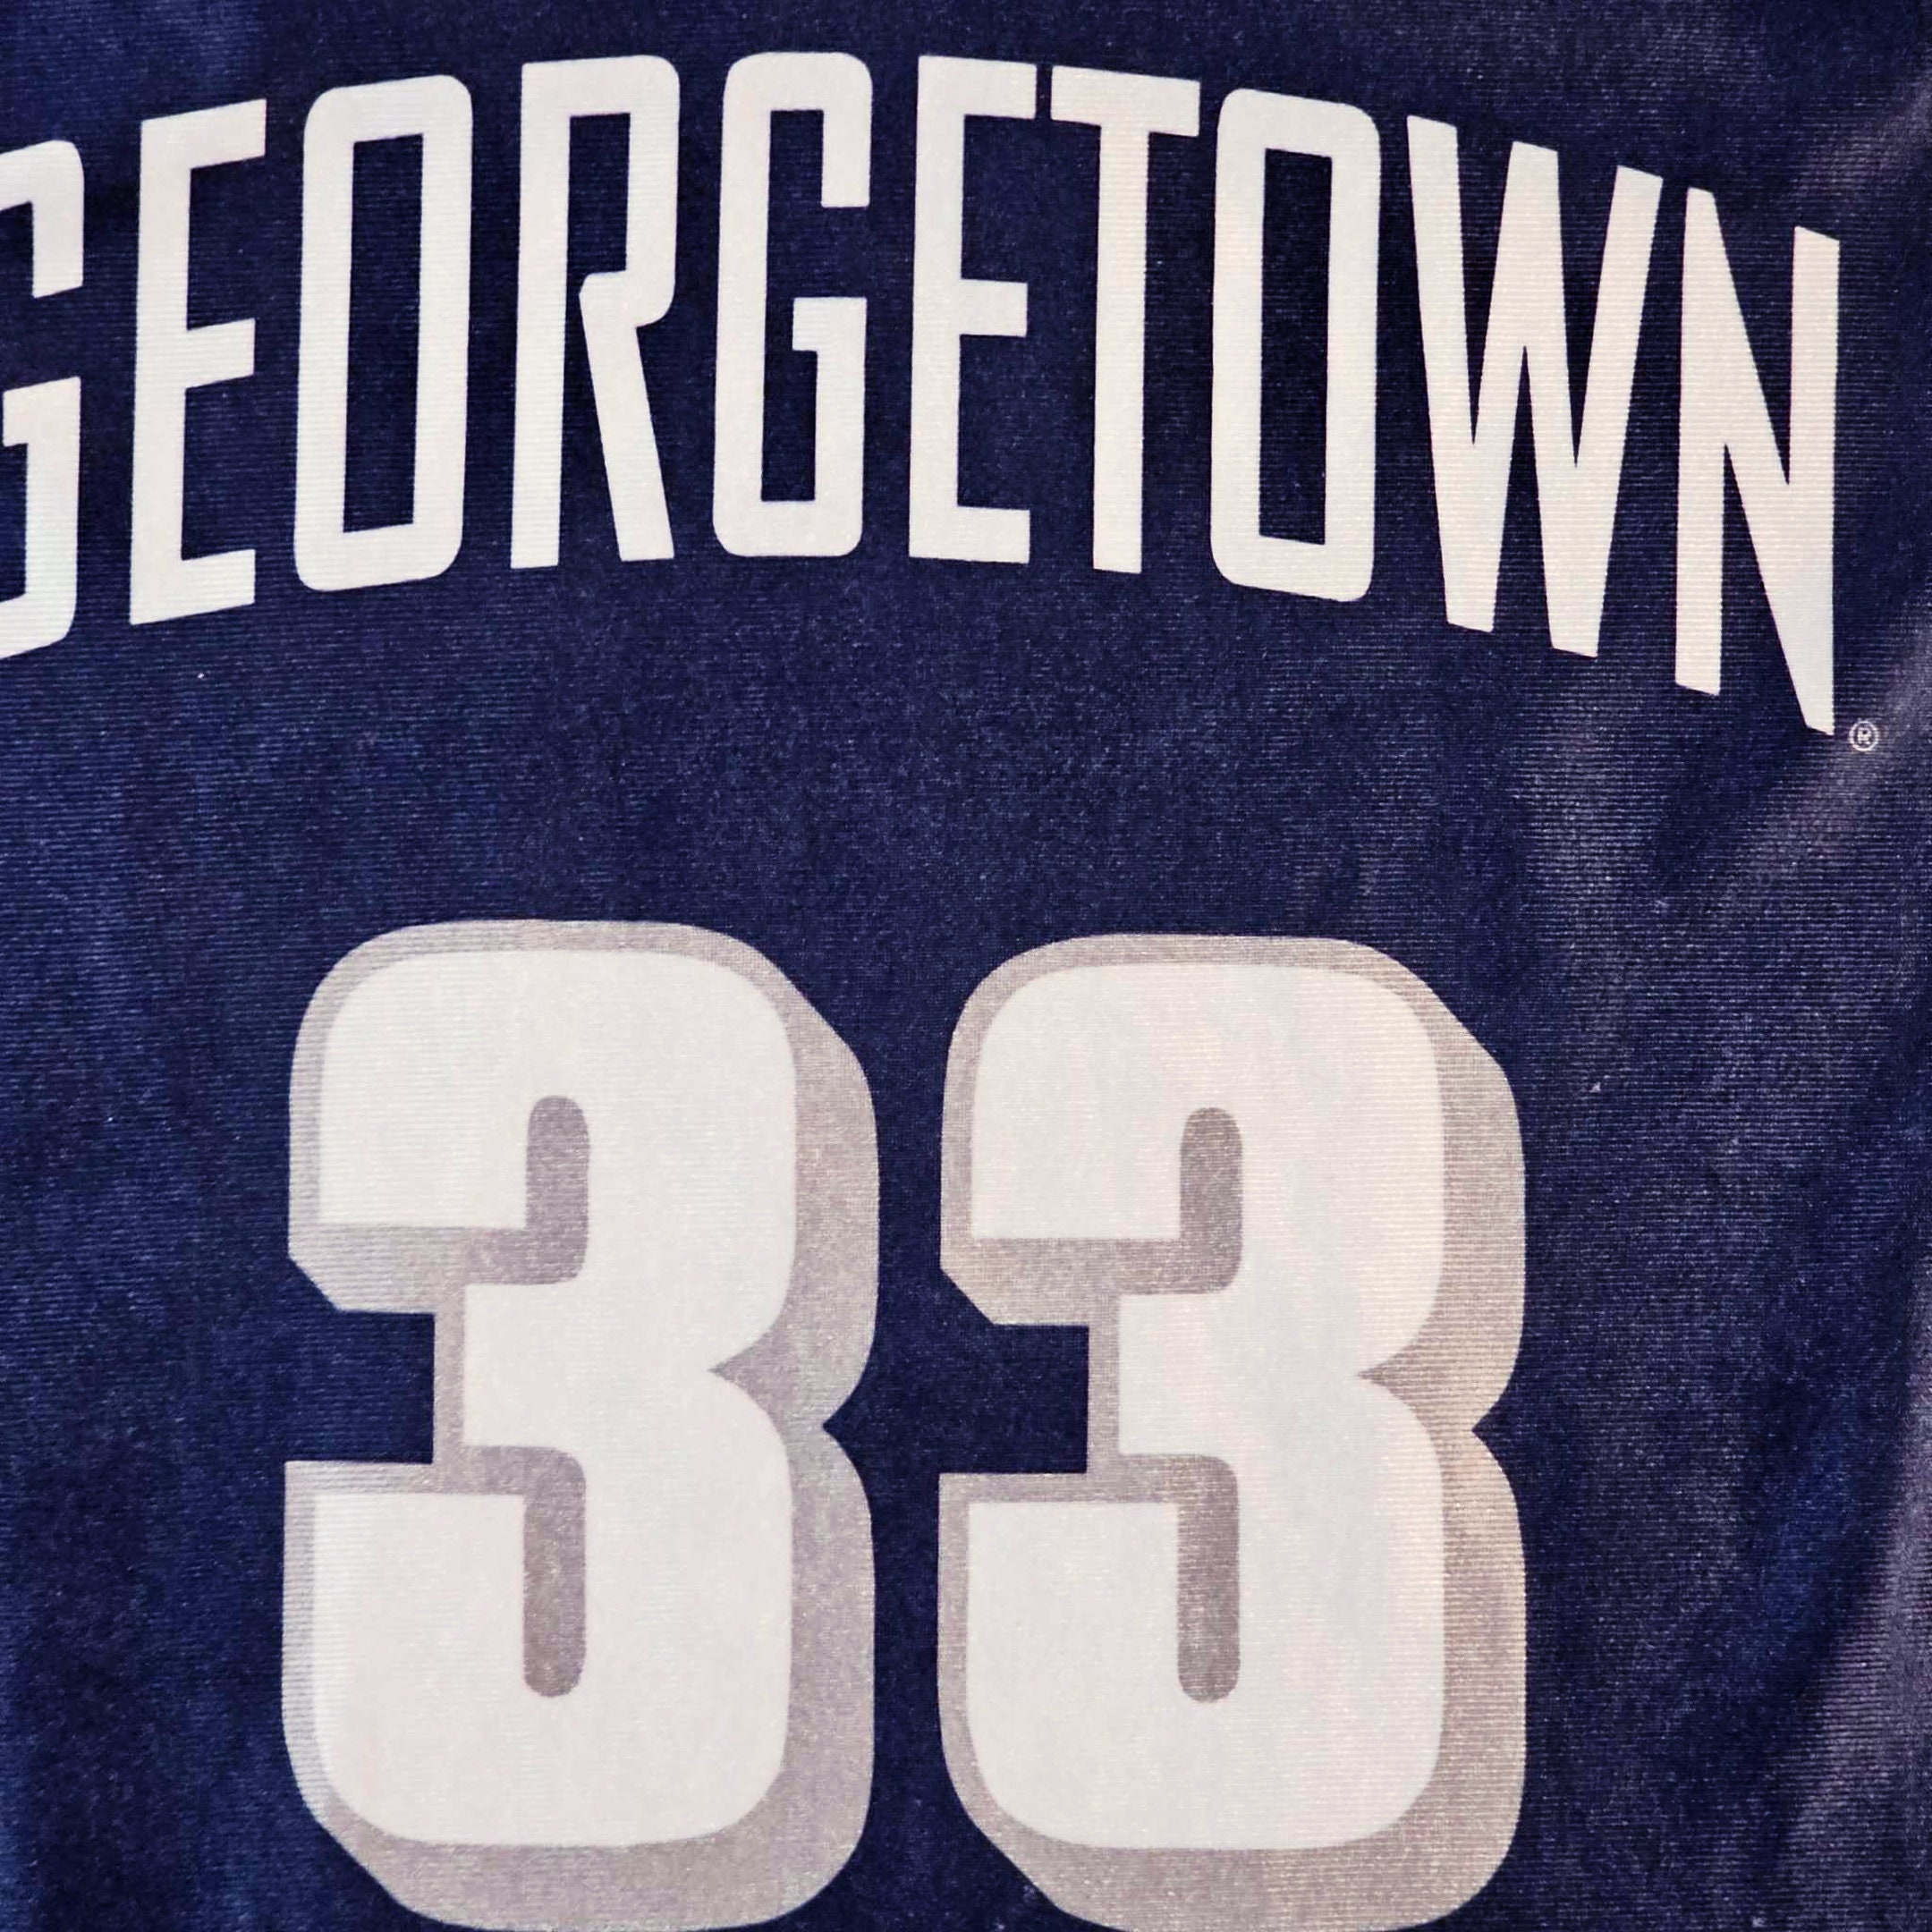 Georgetown Hoyas Vintage Patrick Ewing Nike Basketball Jersey 